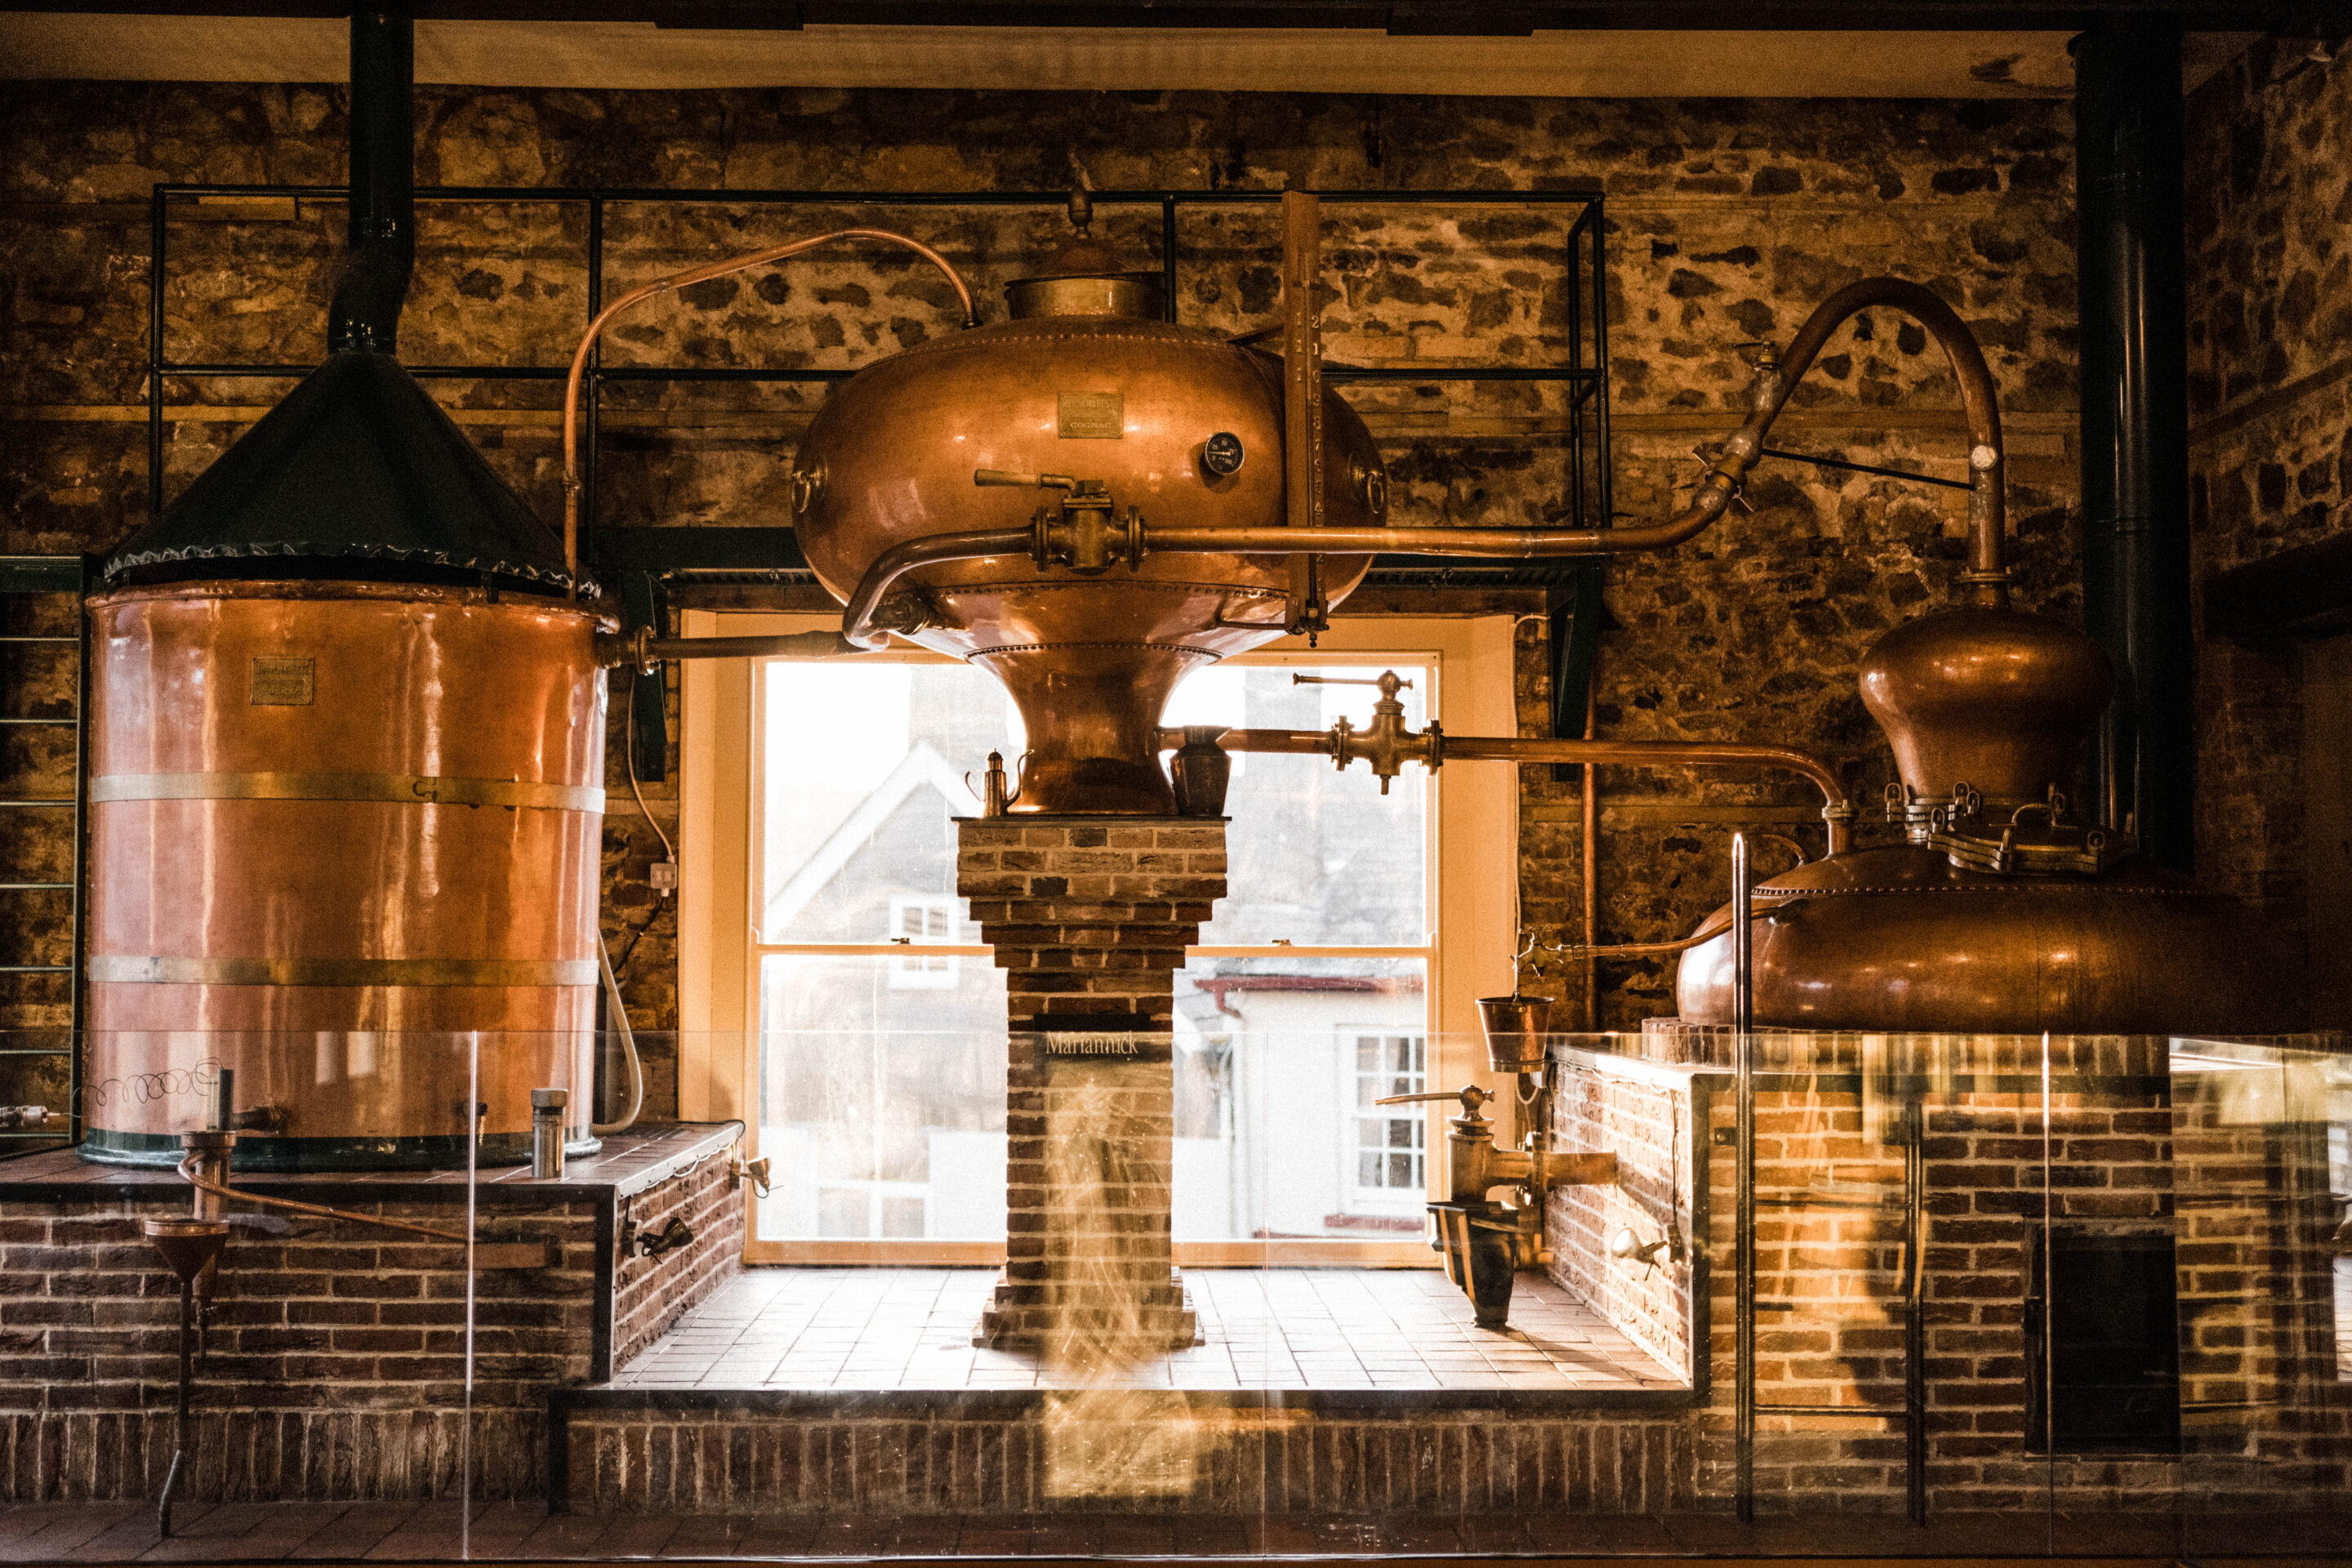 dartmoor whisky distillery stills on display